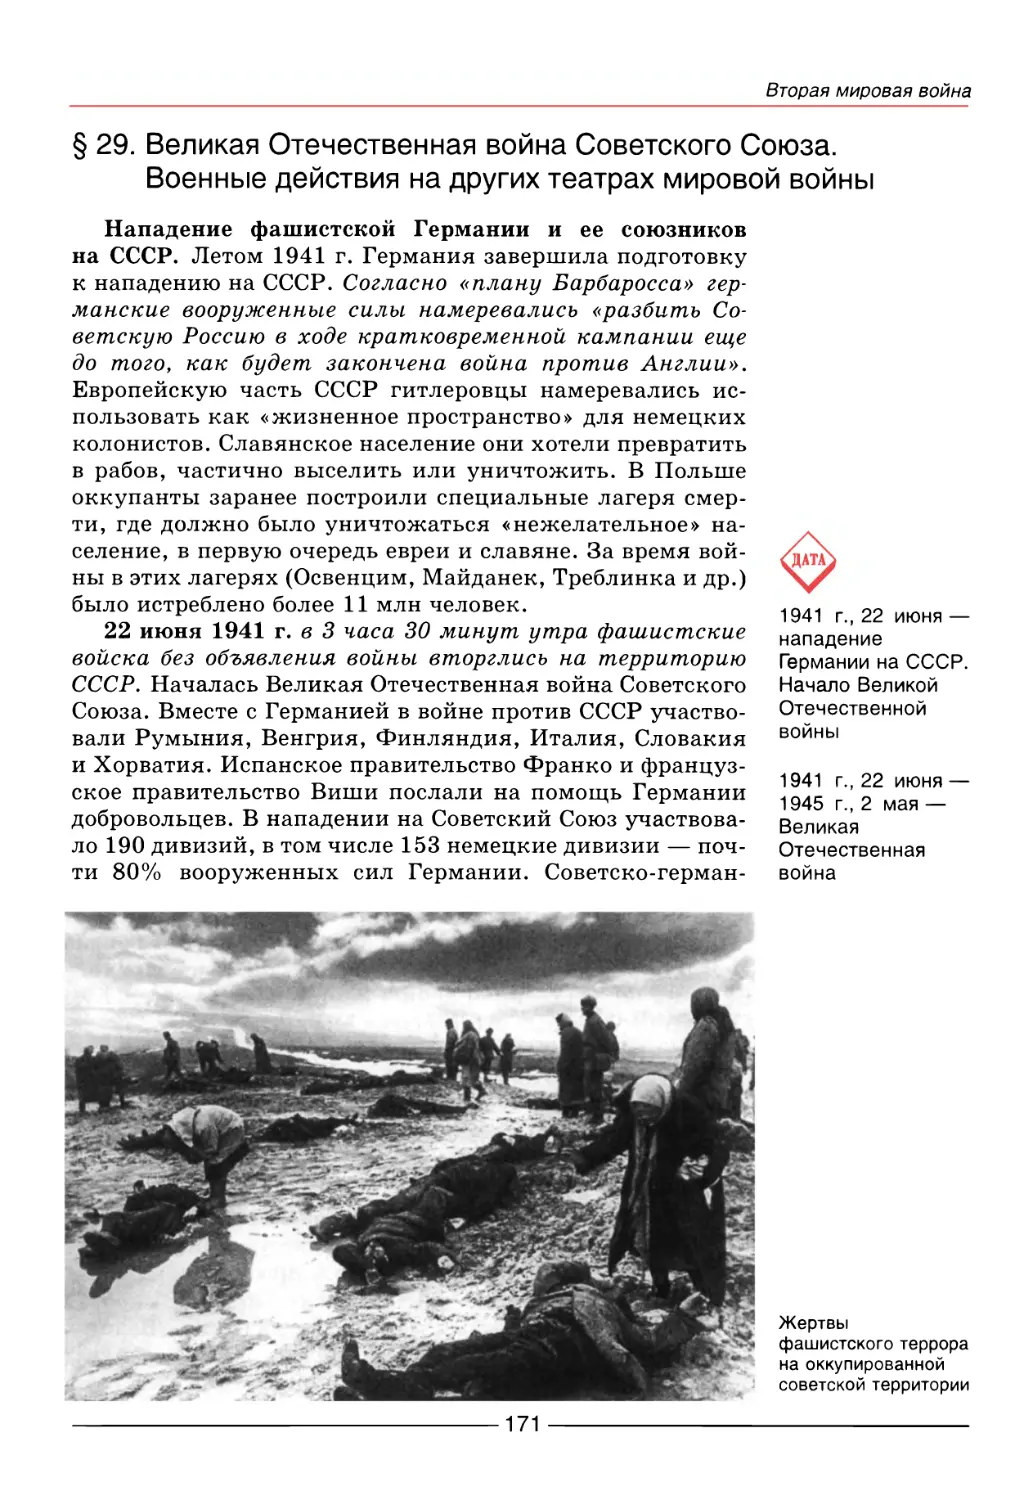 § 29. Великая Отечественная война Советского Союза. Военные действия на других театрах мировой войны